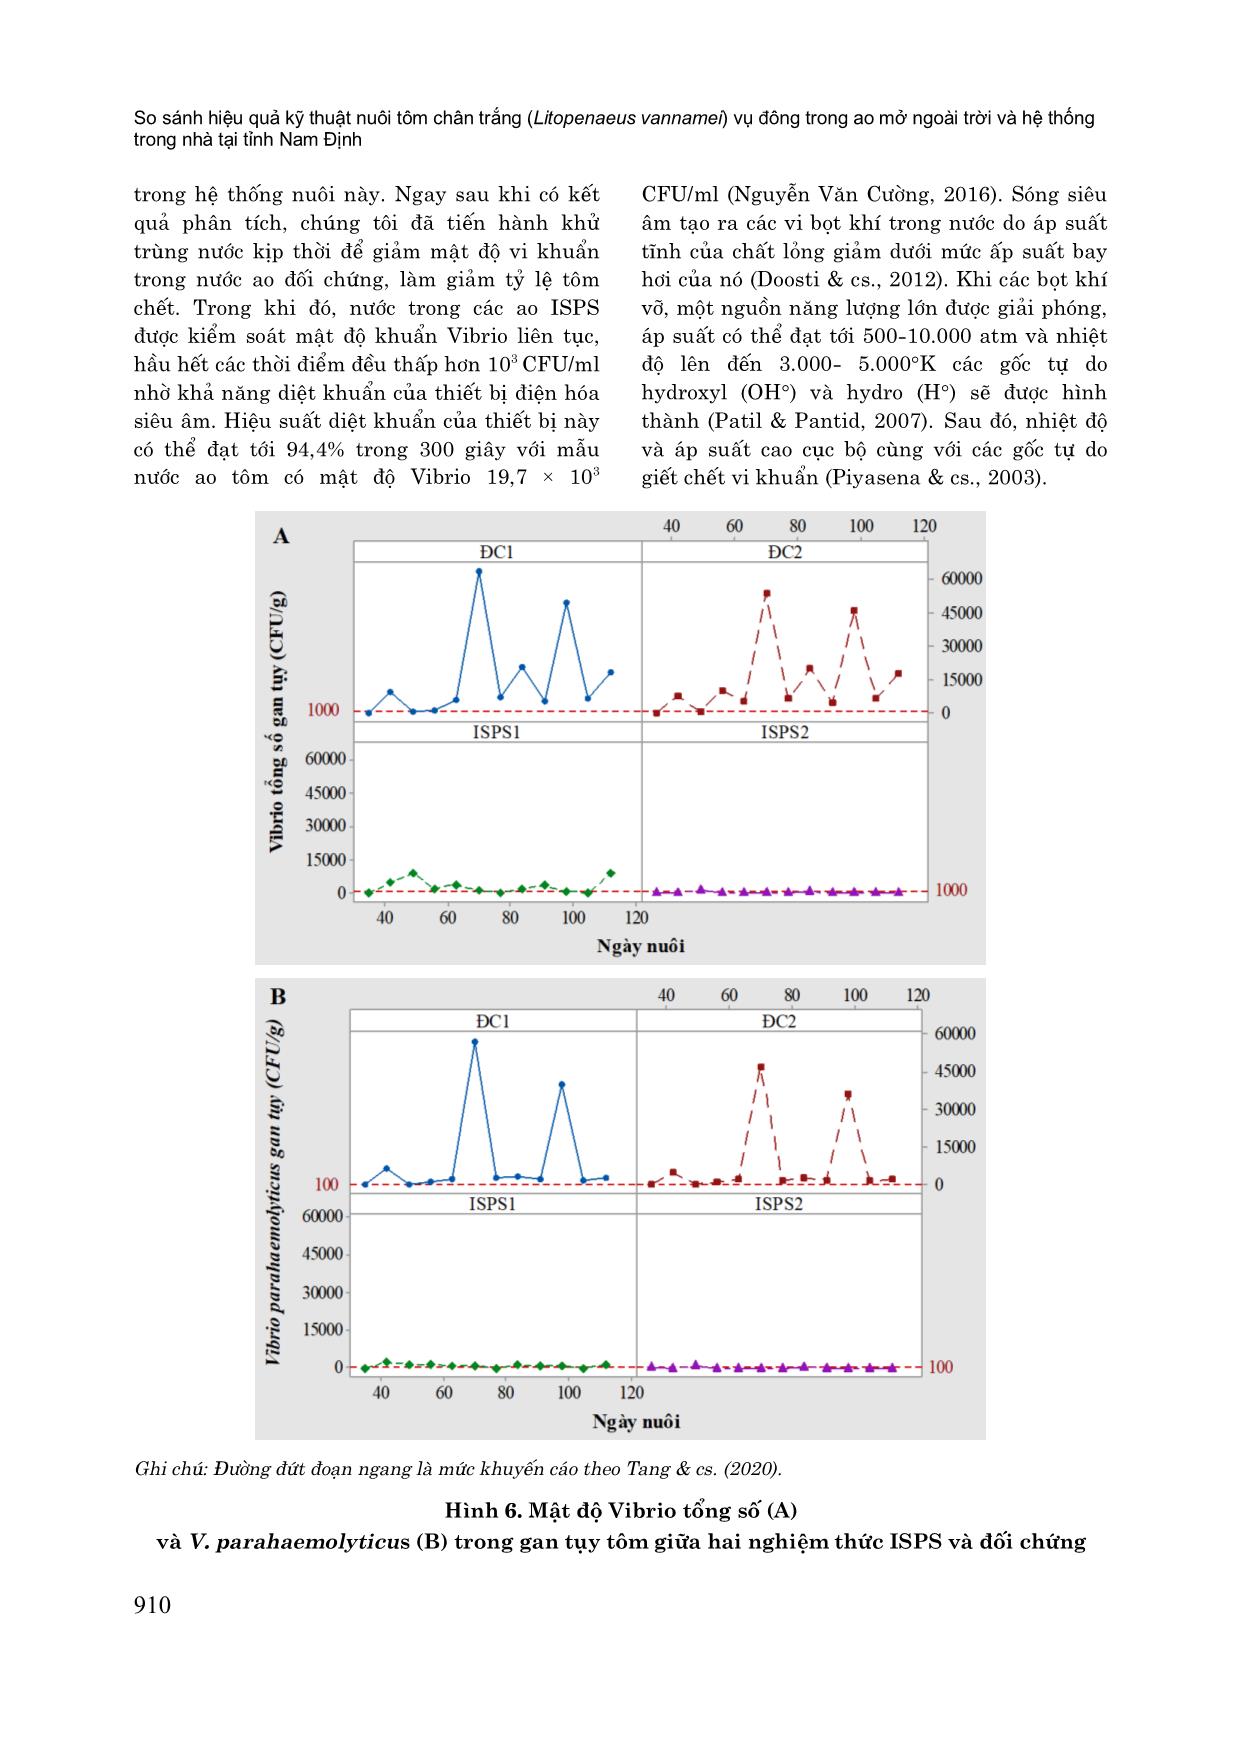 So sánh hiệu quả kỹ thuật nuôi tôm chân trắng (litopenaeus vannamei) vụ đông trong ao mở ngoài trời và hệ thống trong nhà tại tỉnh Nam Định trang 10